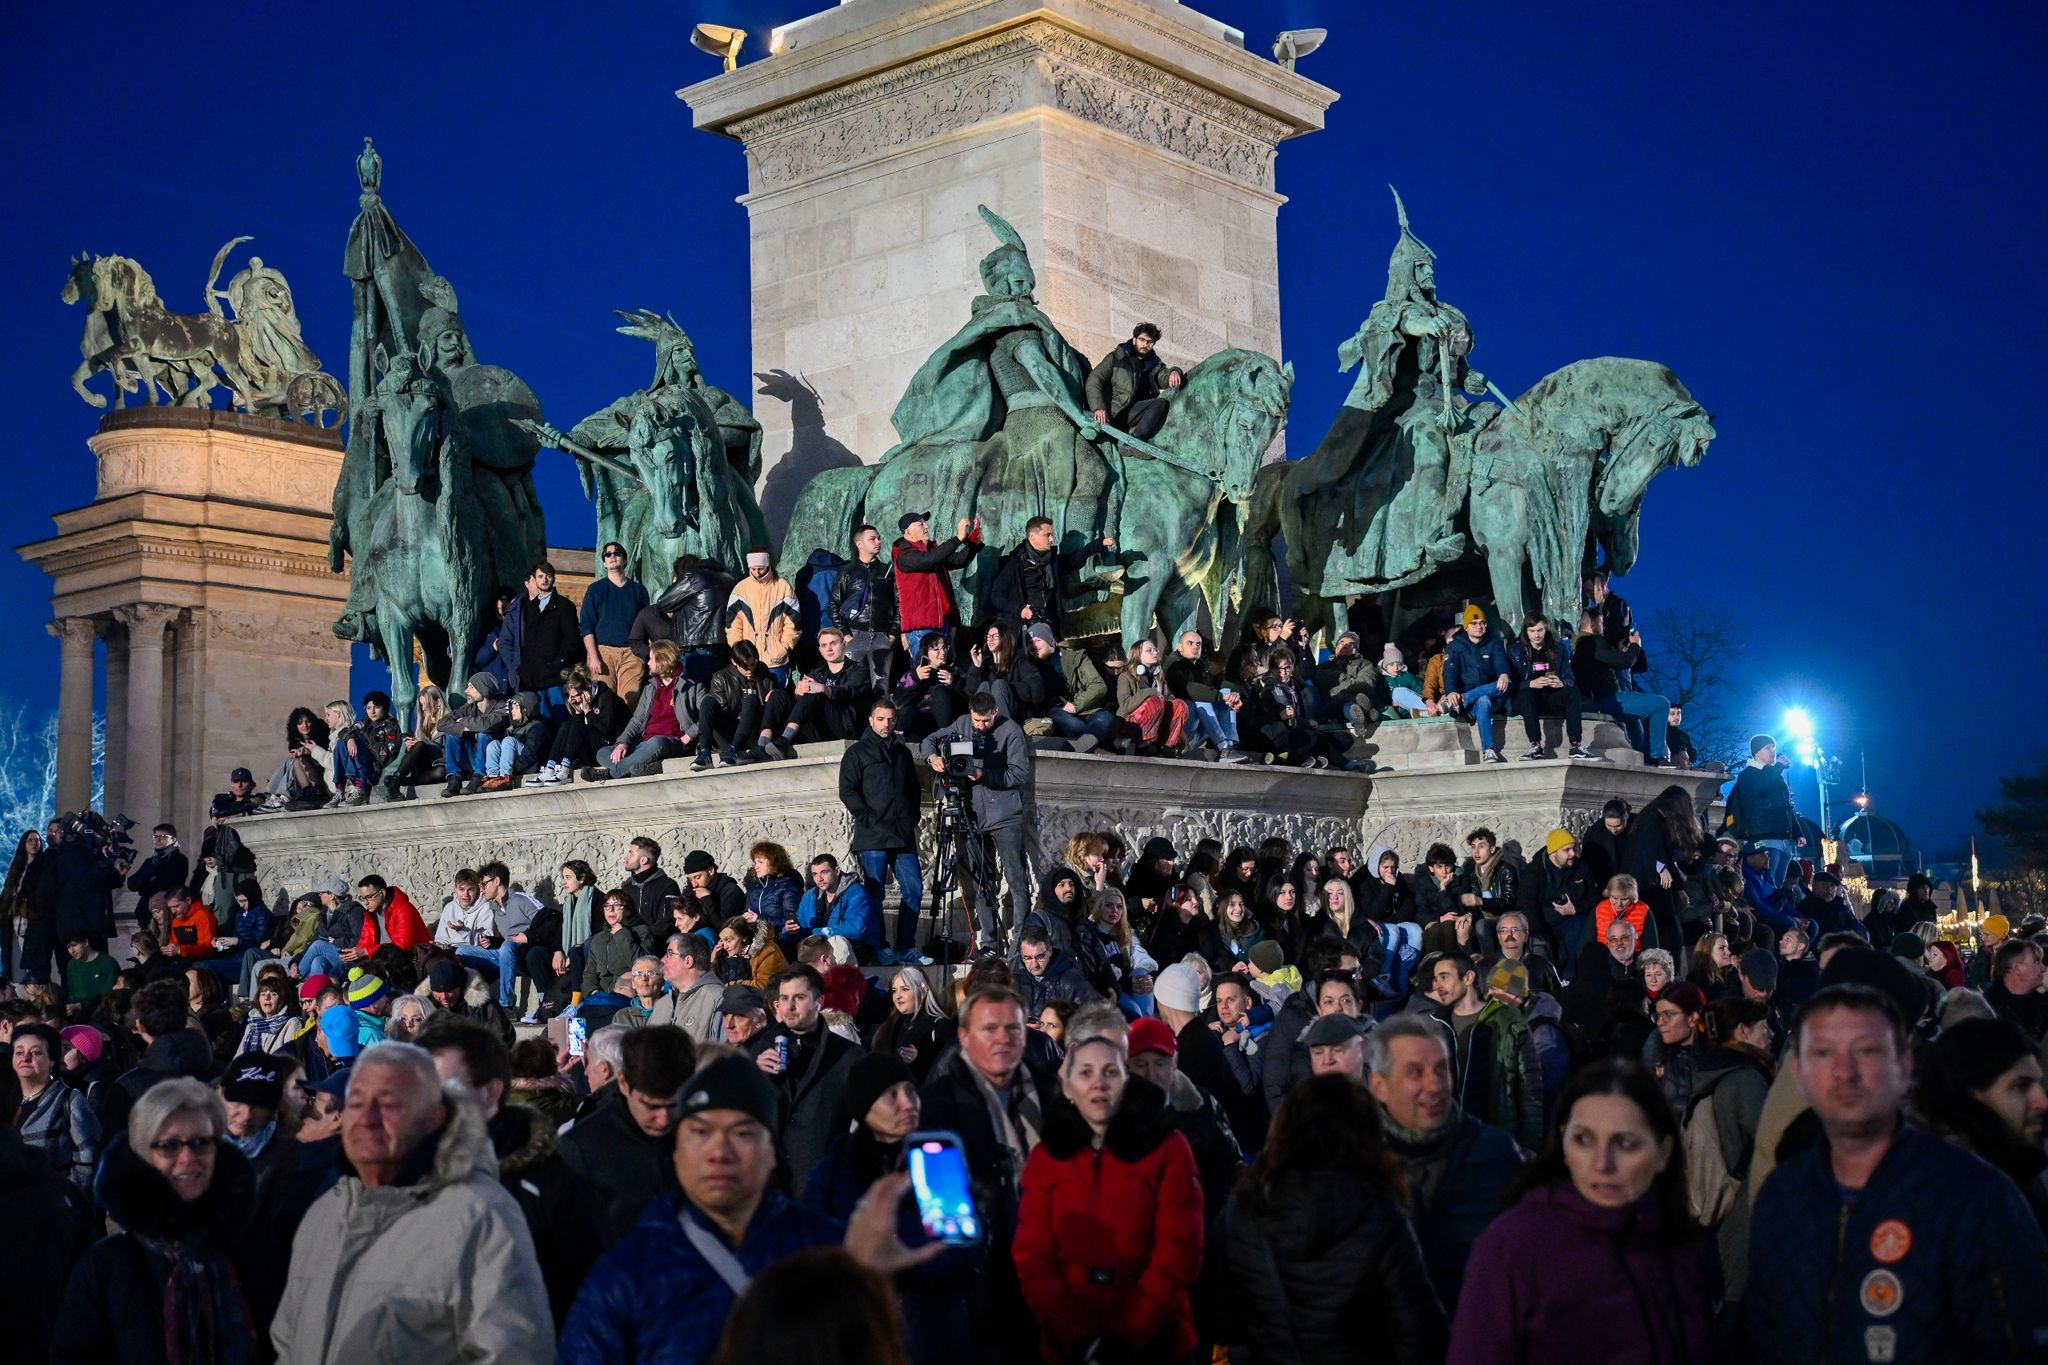 Menschen nehmen an einer Demonstration auf dem Heldenplatz in Budapest teil. Die Demonstrierenden fordern einen Wandel in der politischen Kultur des Landes, nachdem Ungarns Staatspräsidentin Katalin Novak auf Druck von Opposition und Regierung zurückgetreten ist.